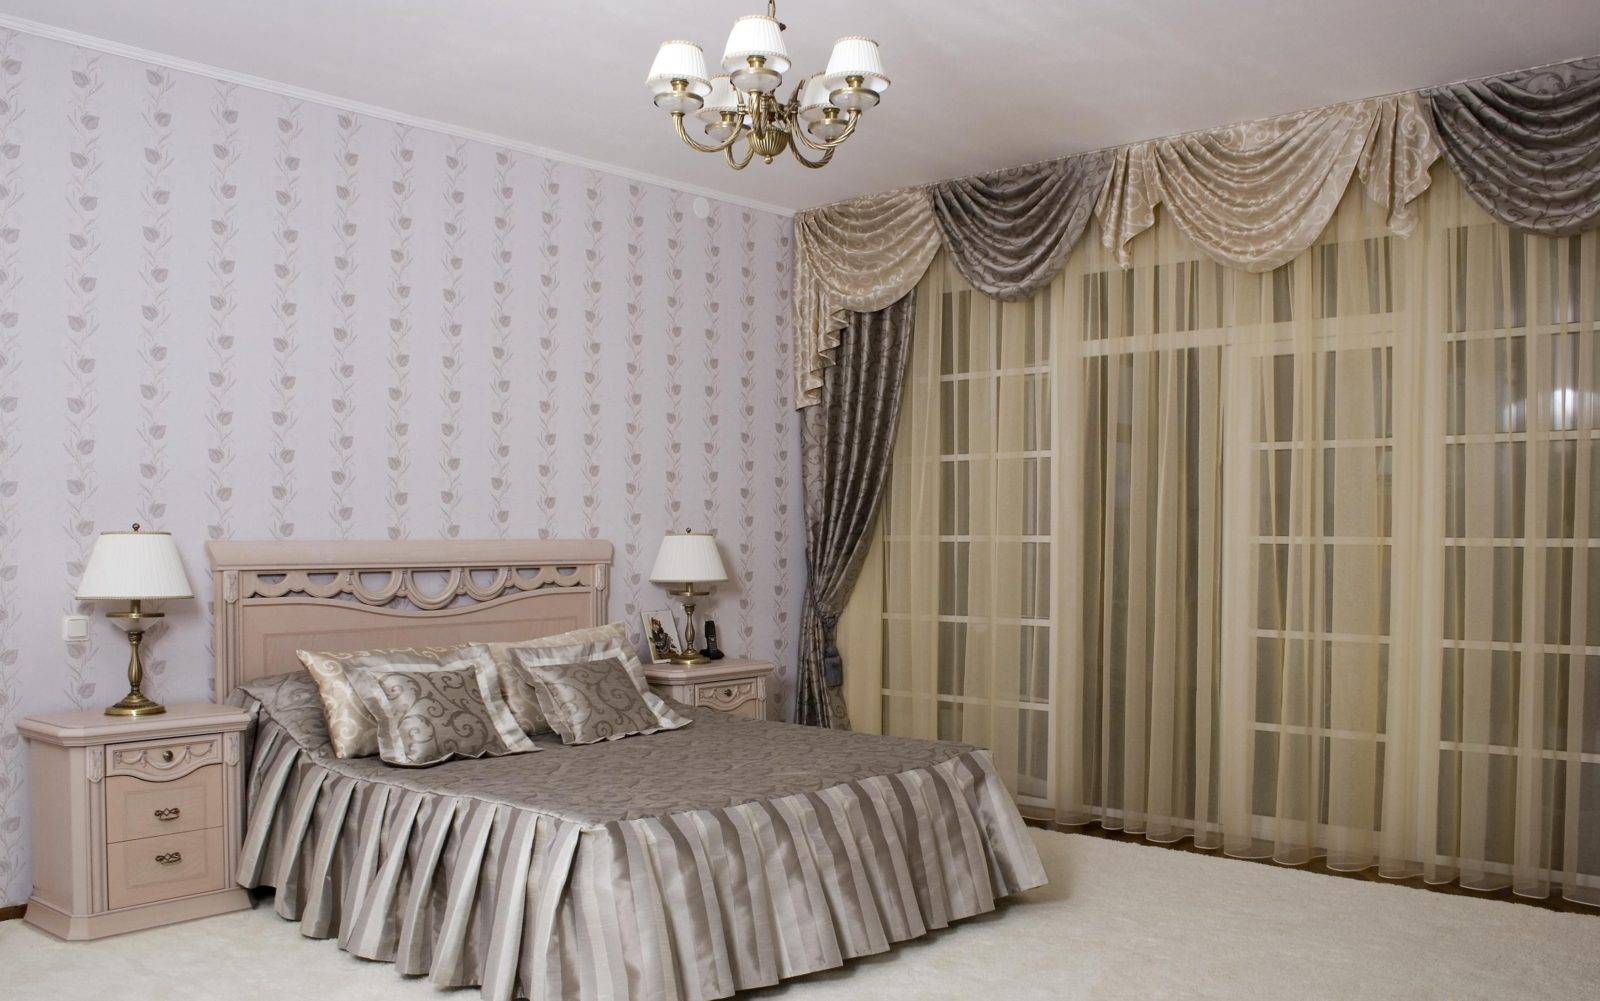 Как выбрать плотные шторы для спальни – советы по оформлению интерьера